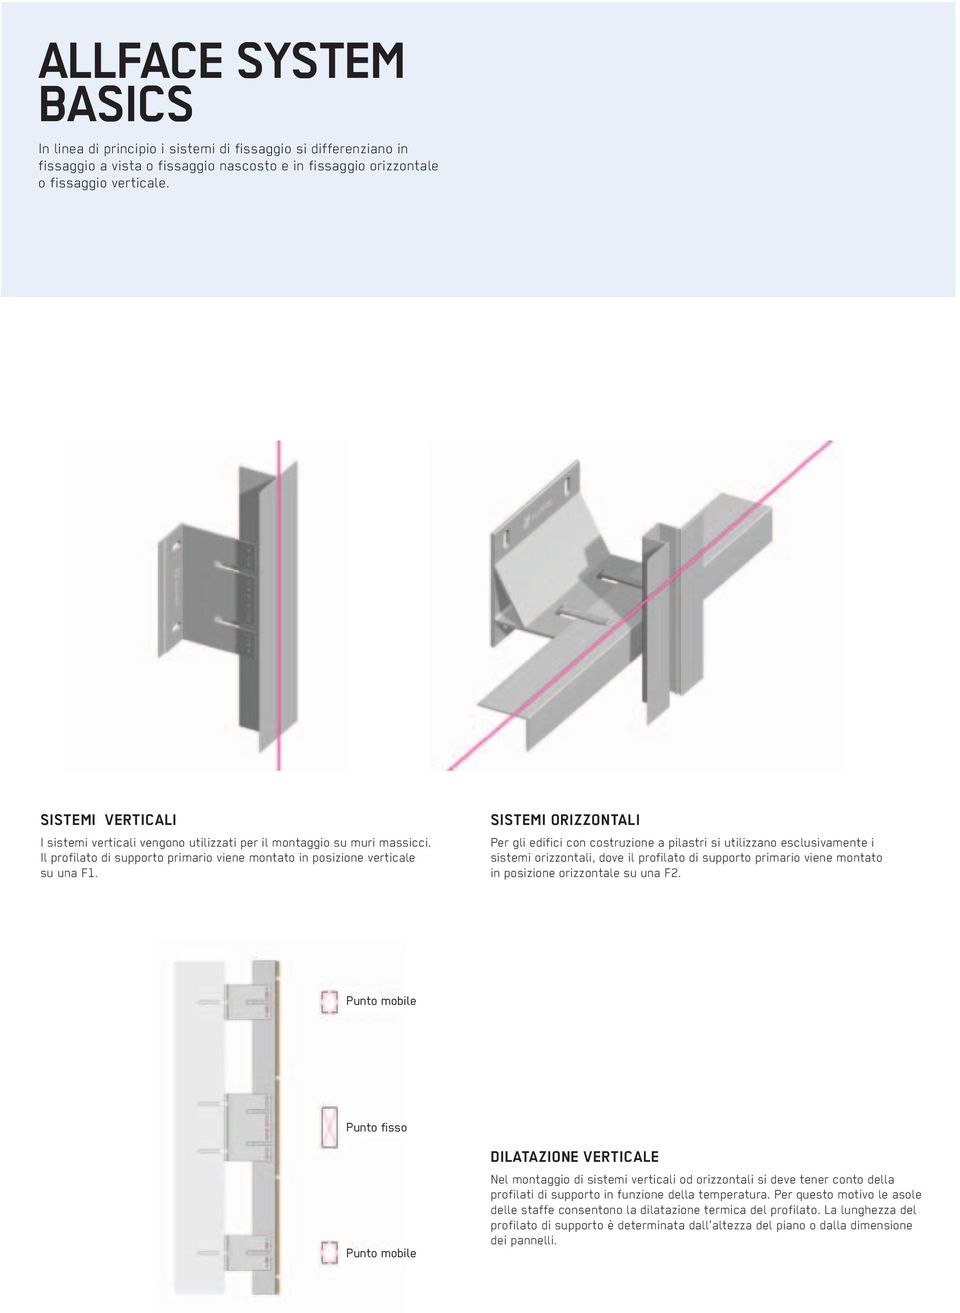 SISTEMI ORIZZONTALI Per gli edifici con costruzione a pilastri si utilizzano esclusivamente i sistemi orizzontali, dove il profilato di supporto primario viene montato in posizione orizzontale su una